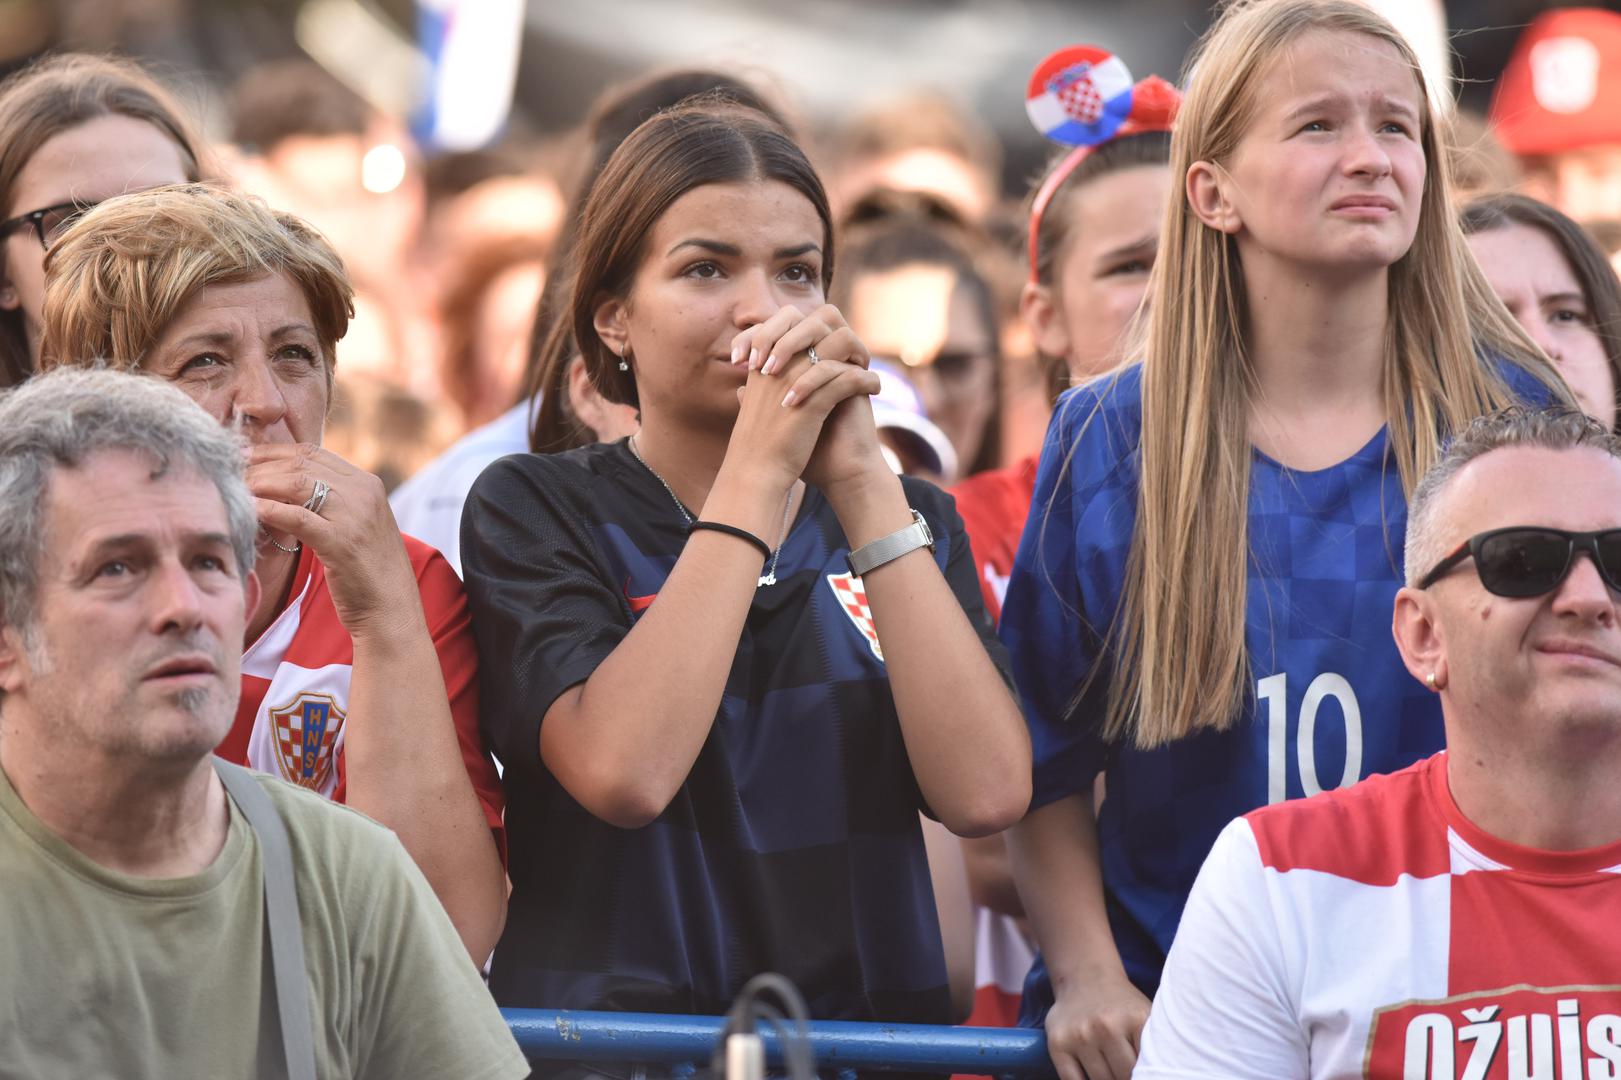 Finale Svjetskog prvenstva između Hrvatske i Francuske pratile se u rodnom mjestu izbornika Zlatka Dalića.

